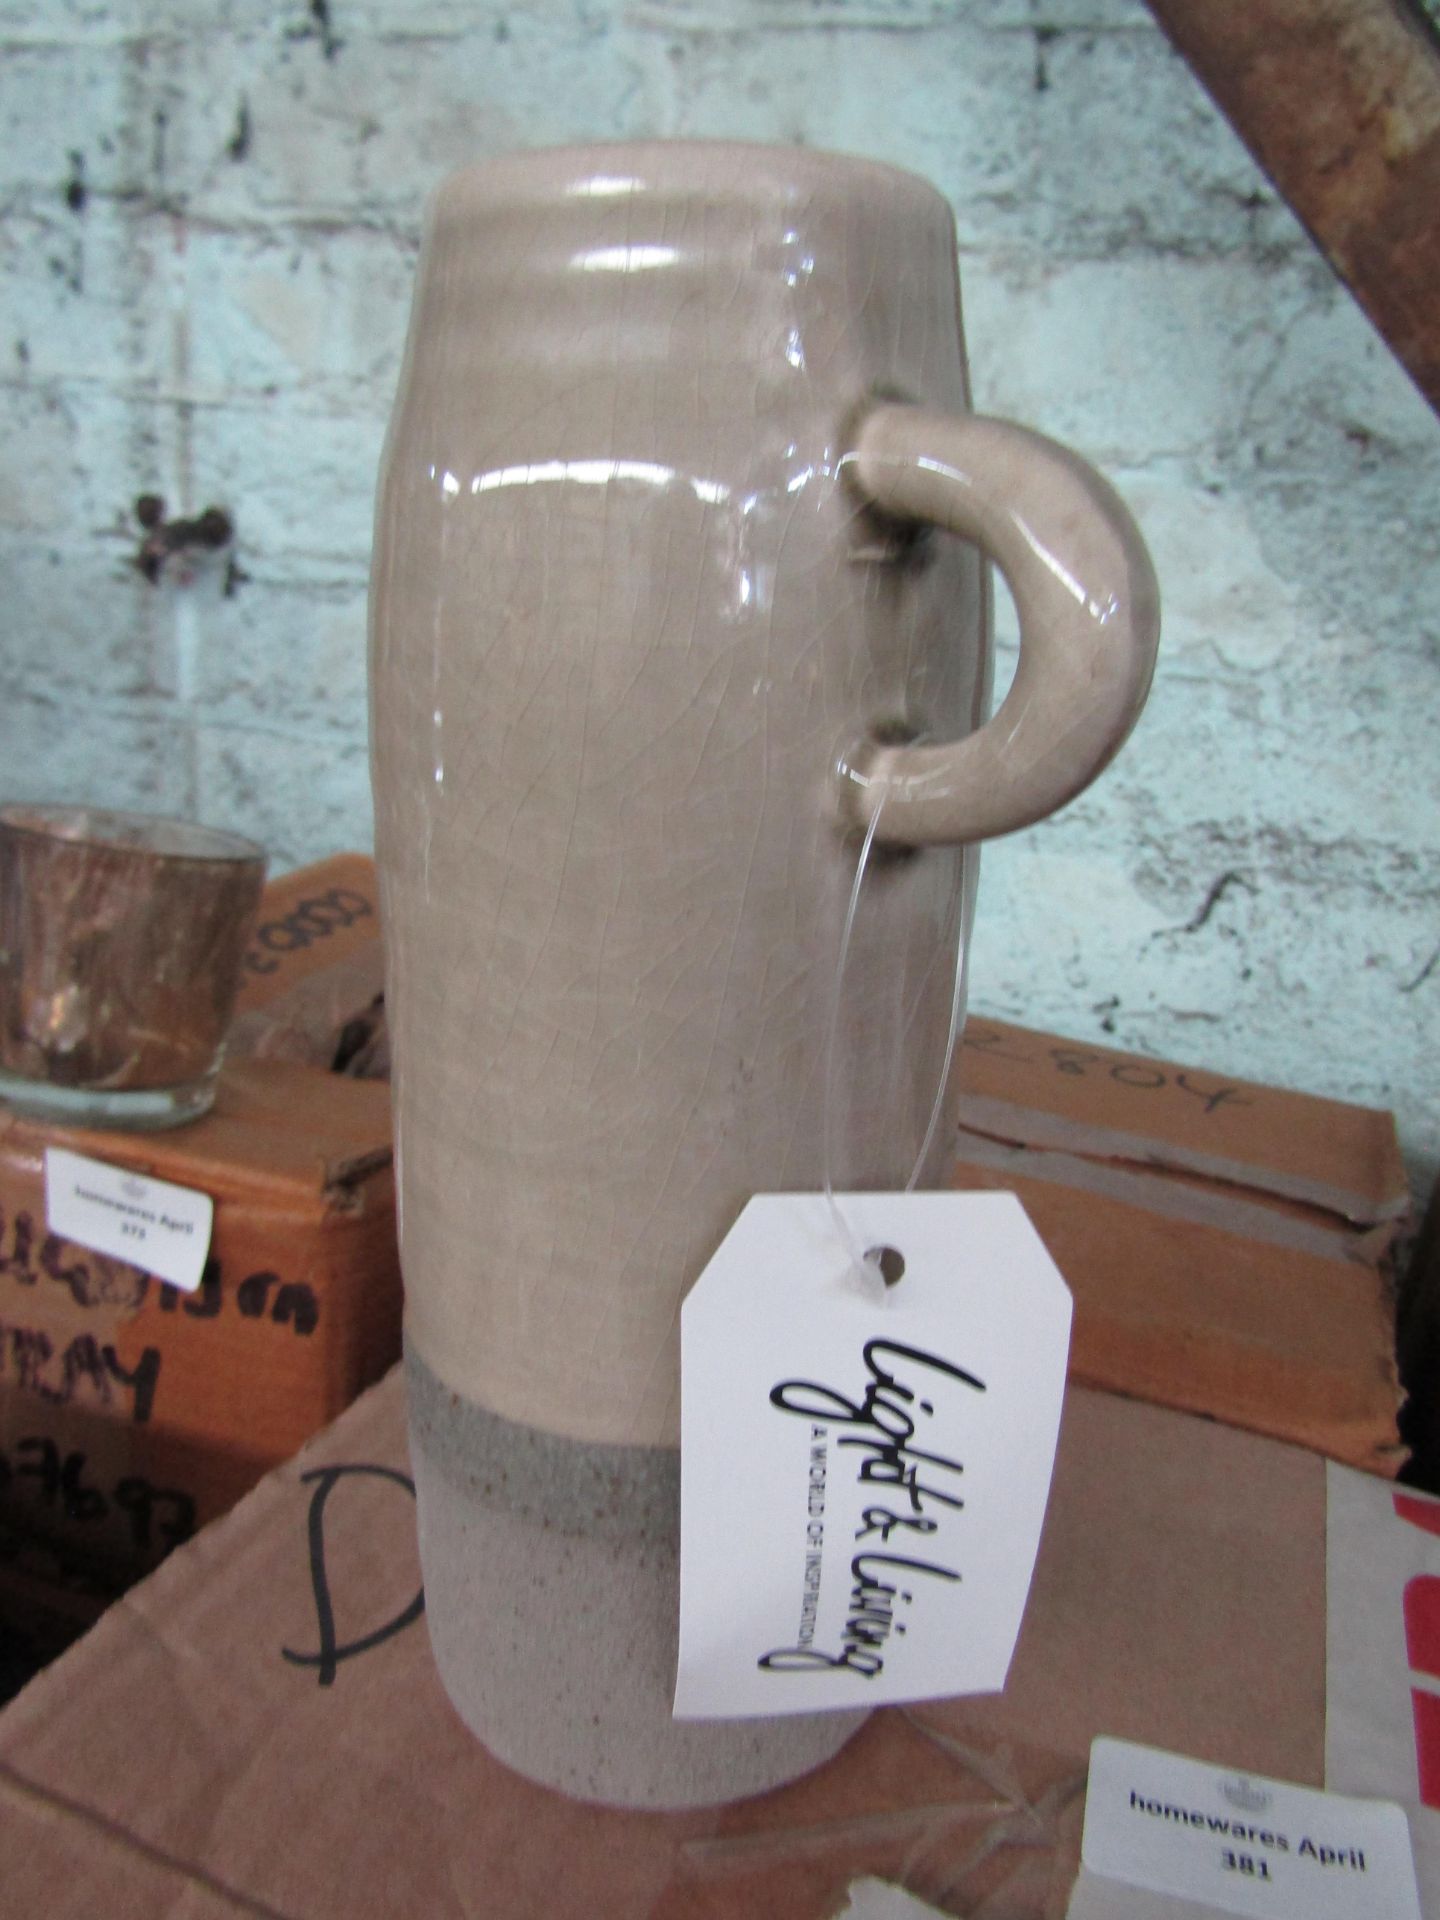 Ceramic Jug Vase - Large - New. (DR630)